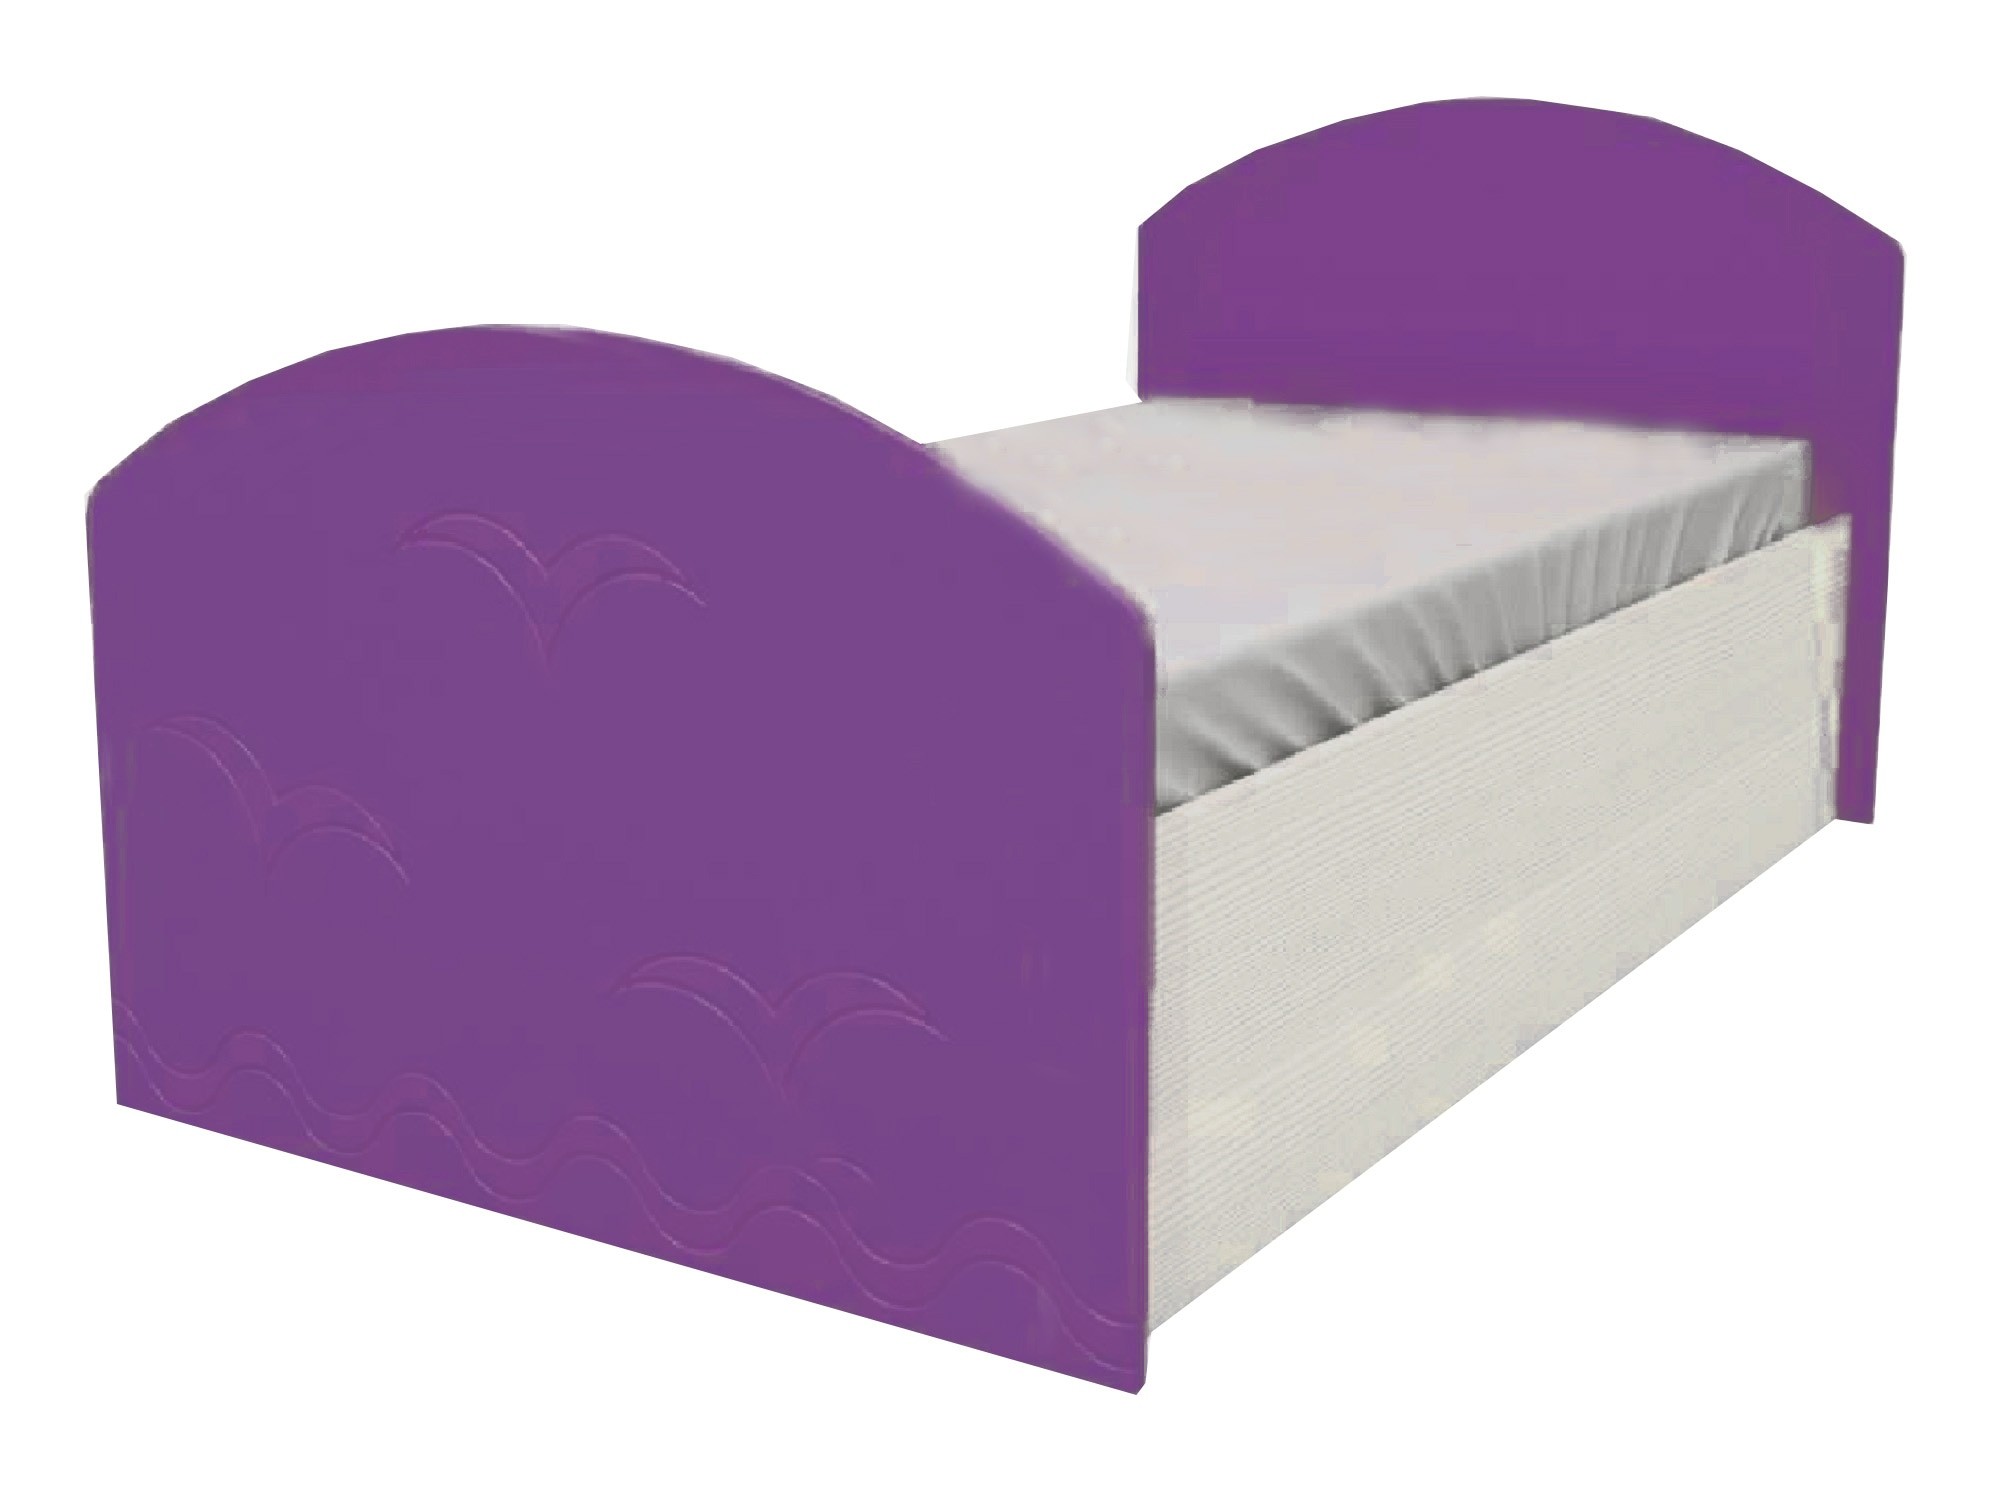 Юниор-2 Детская кровать 80, металлик (Фиолетовый металлик, Дуб белёный) Фиолетовый металлик, МДФ, ЛДСП юниор 2 детская кровать 80 металлик розовый металлик дуб белёный дуб белёный мдф лдсп